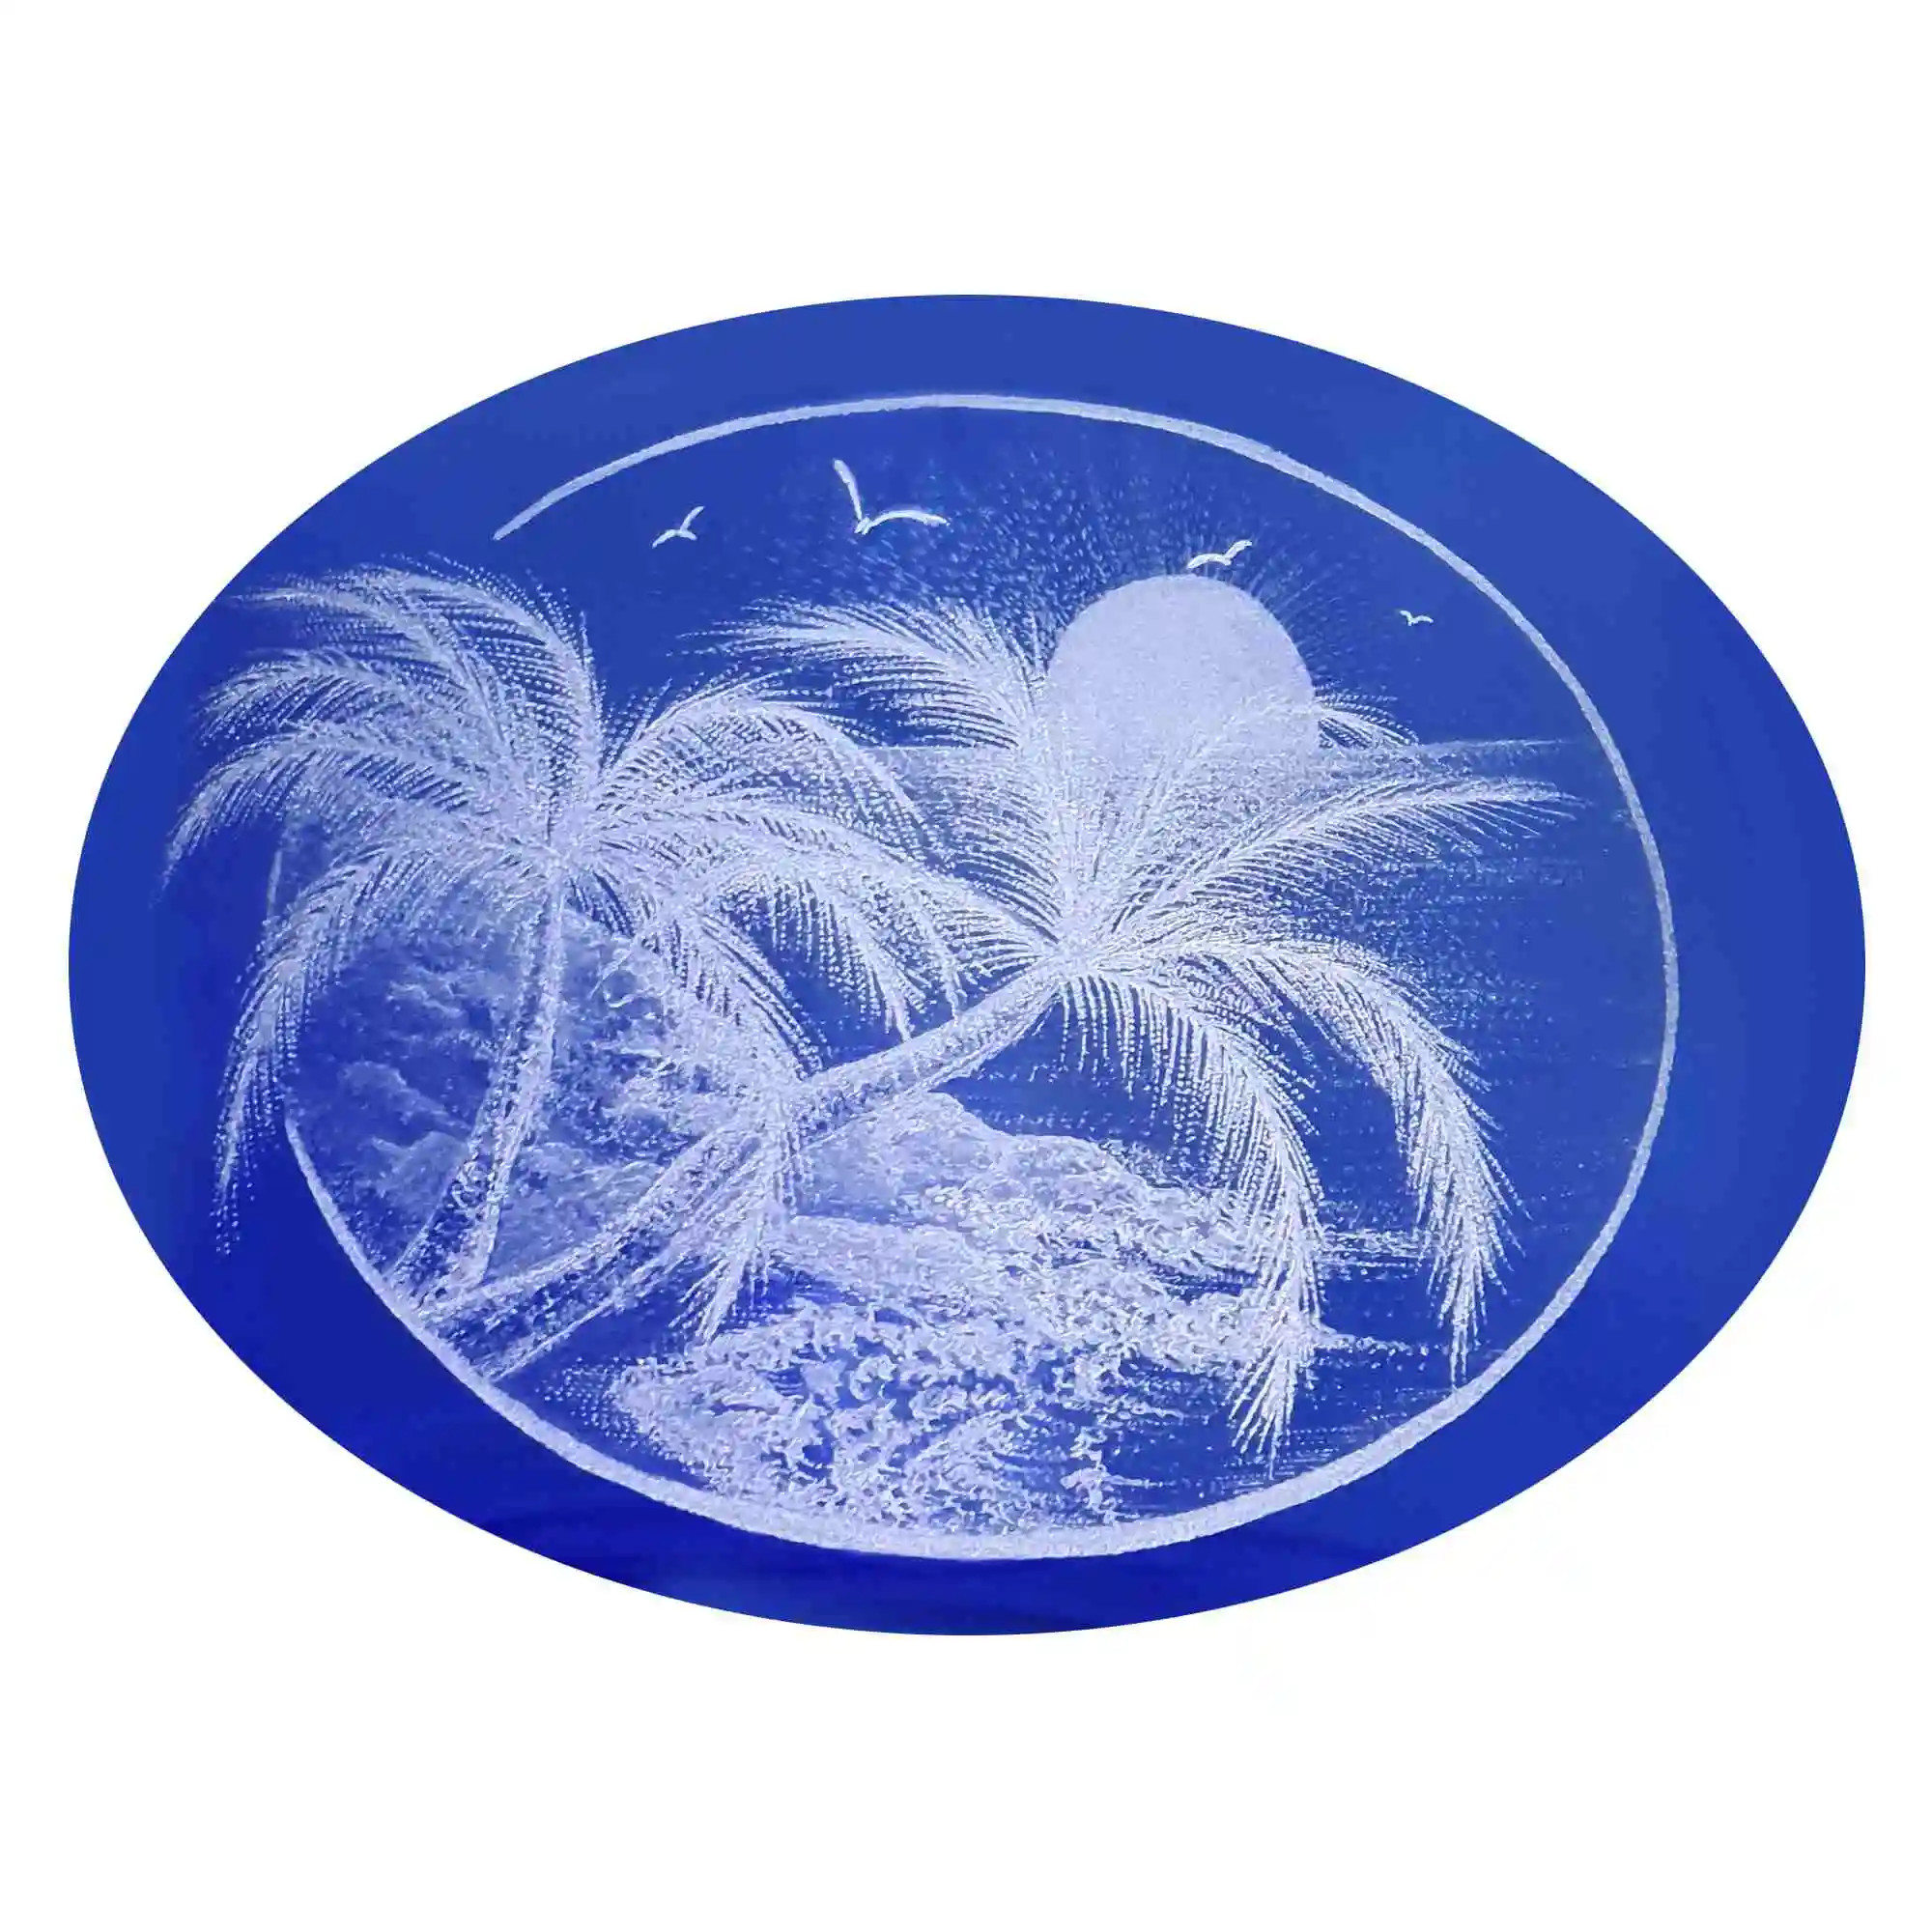 Nahaufnahme der Gravur auf blauem Glas, die Gravur zeigt eine tropischen Szene mit Palmen und Meer.